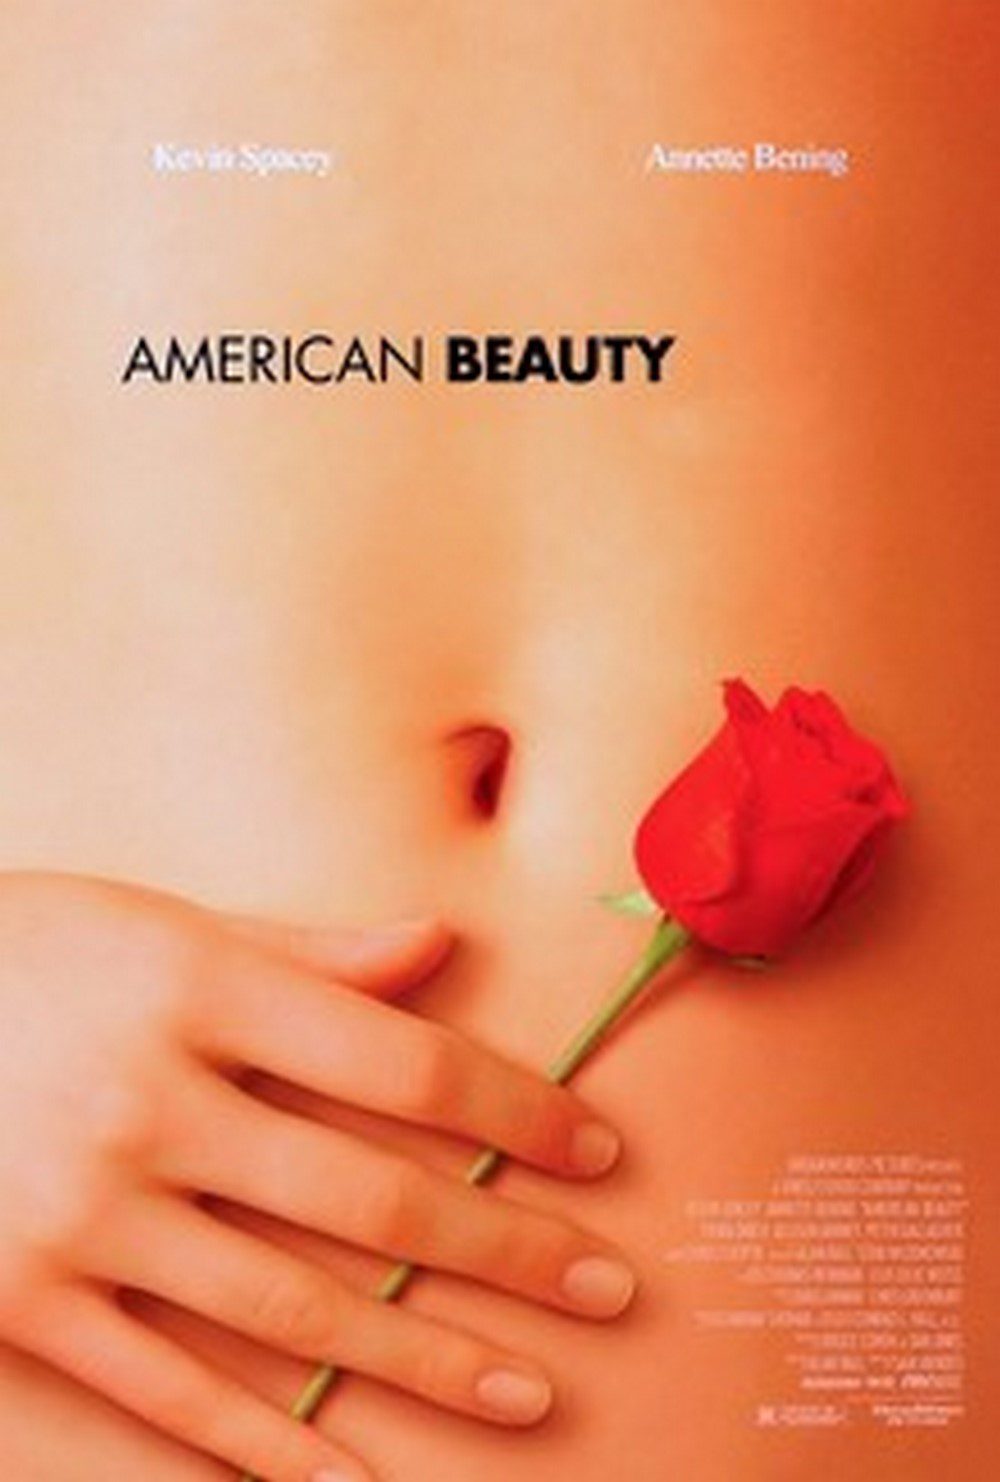 20 érdekesség az Amerikai szépség című filmről